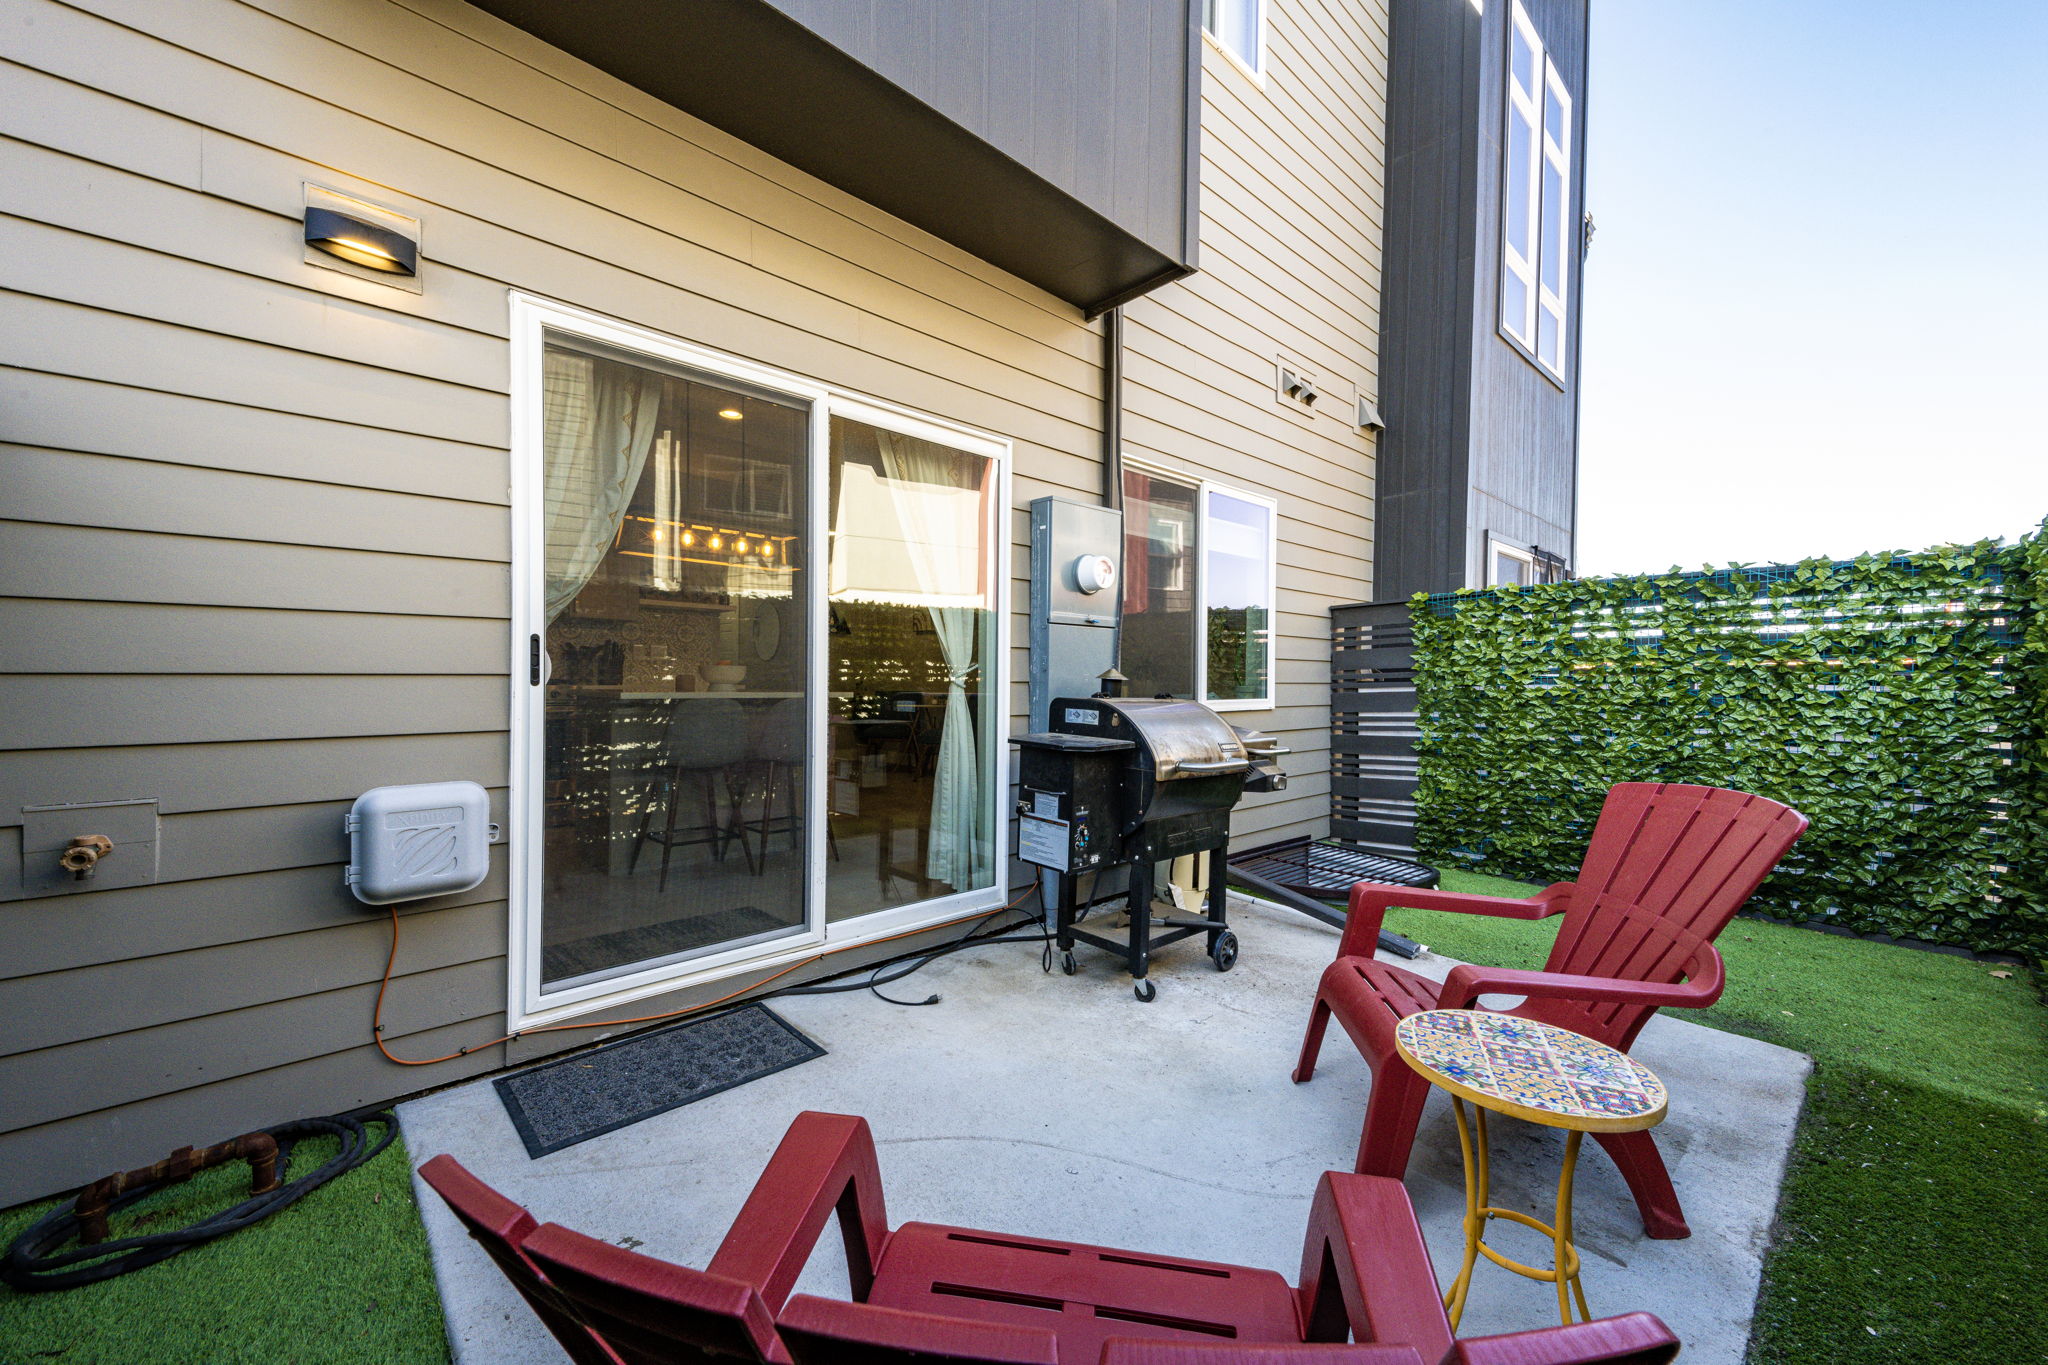 Private backyard patio area